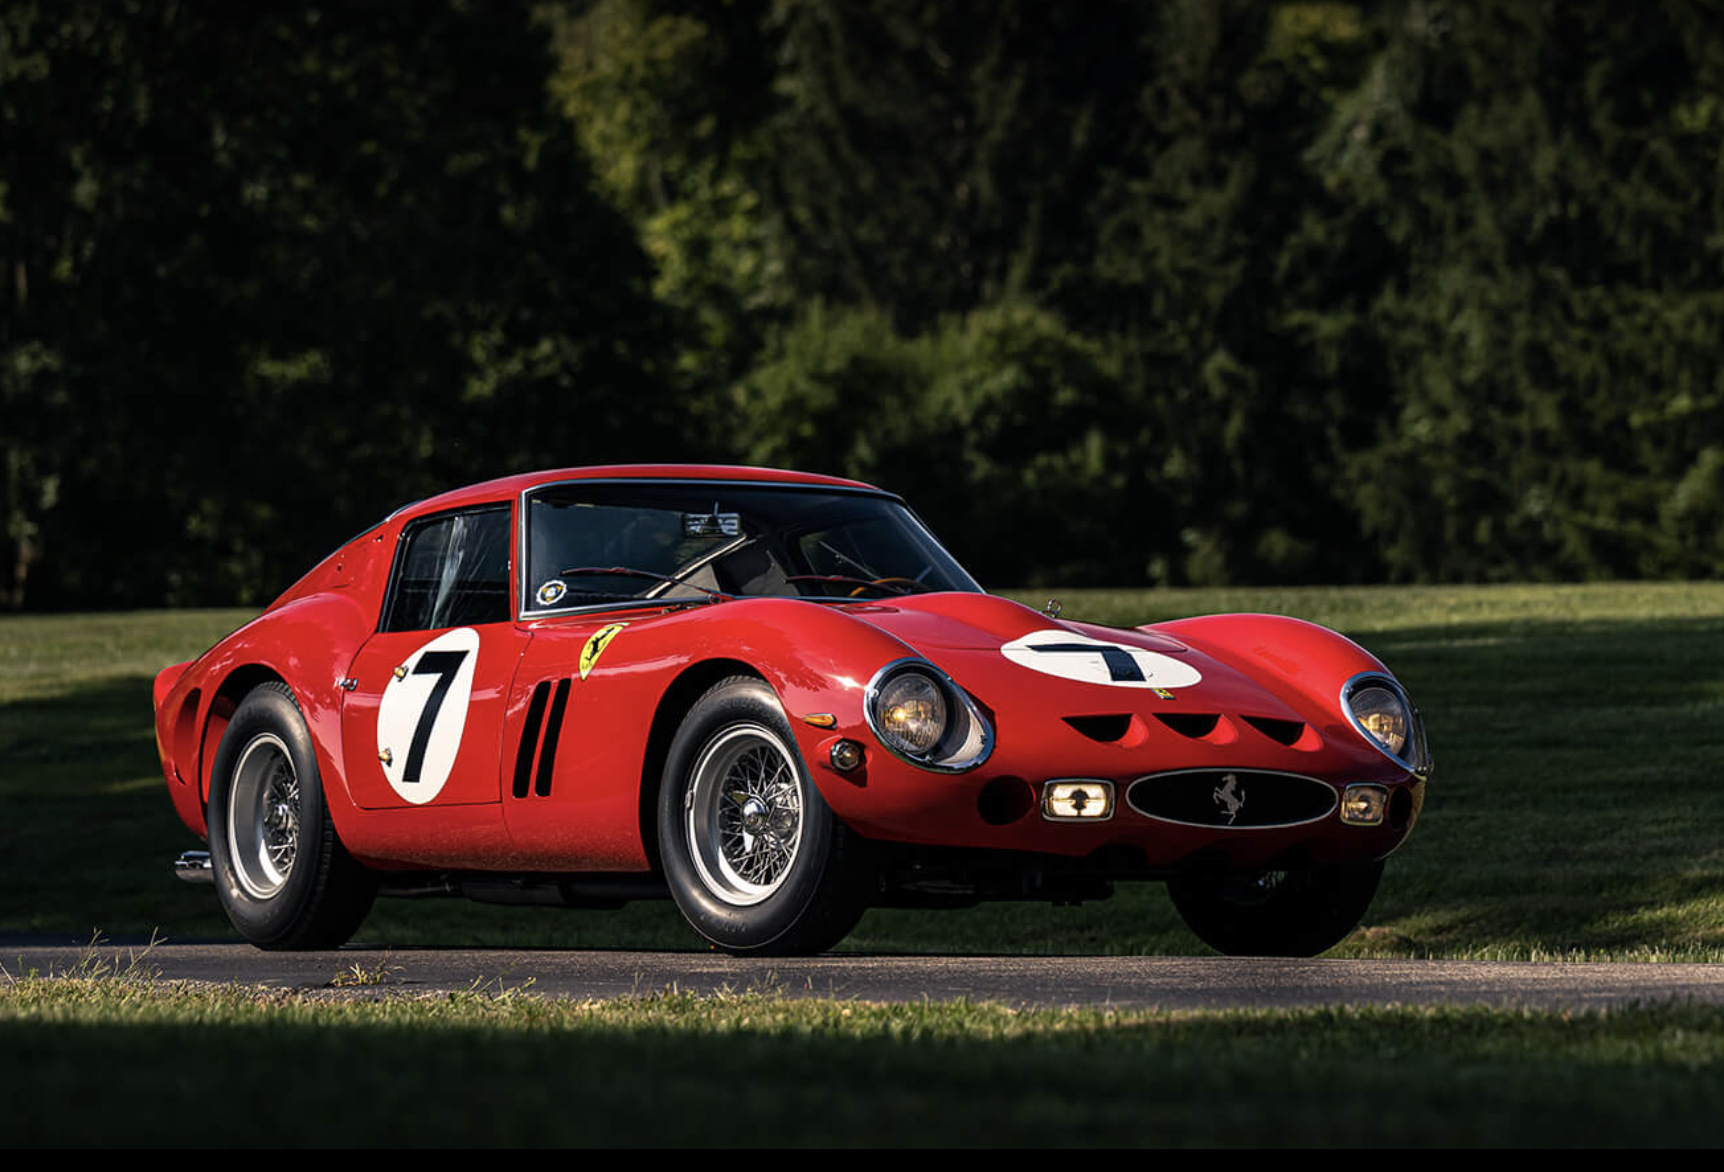 La leggenda all’asta. Da RM Sotheby’s la Ferrari 250 GTO del 1962 stima 60 milioni